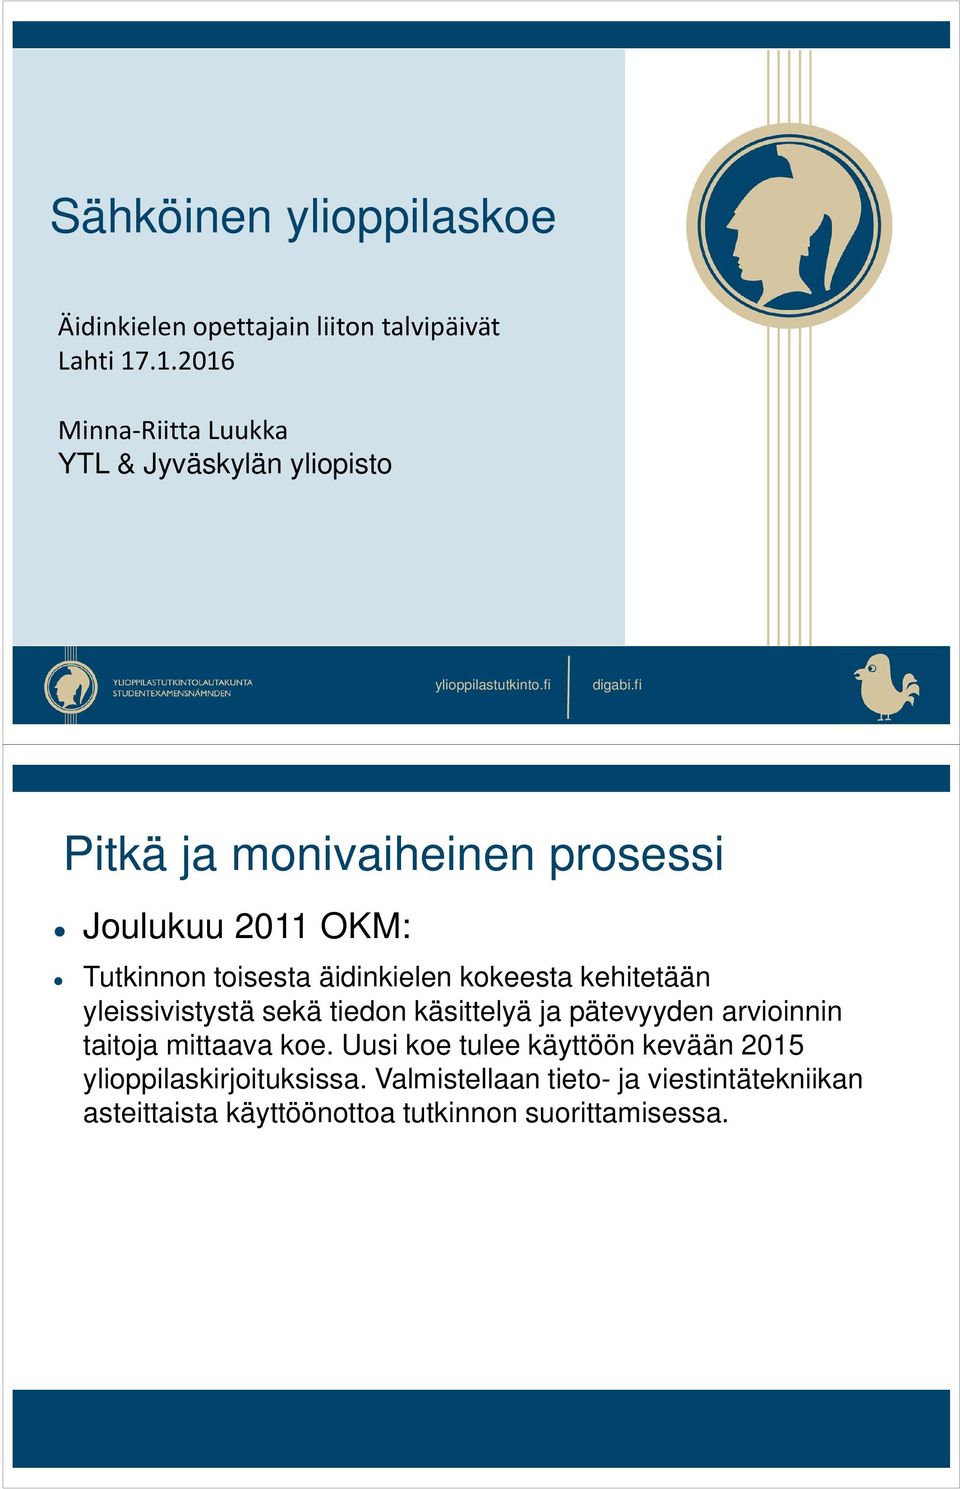 fi Pitkä ja monivaiheinen prosessi Joulukuu 2011 OKM: Tutkinnon toisesta äidinkielen kokeesta kehitetään yleissivistystä sekä